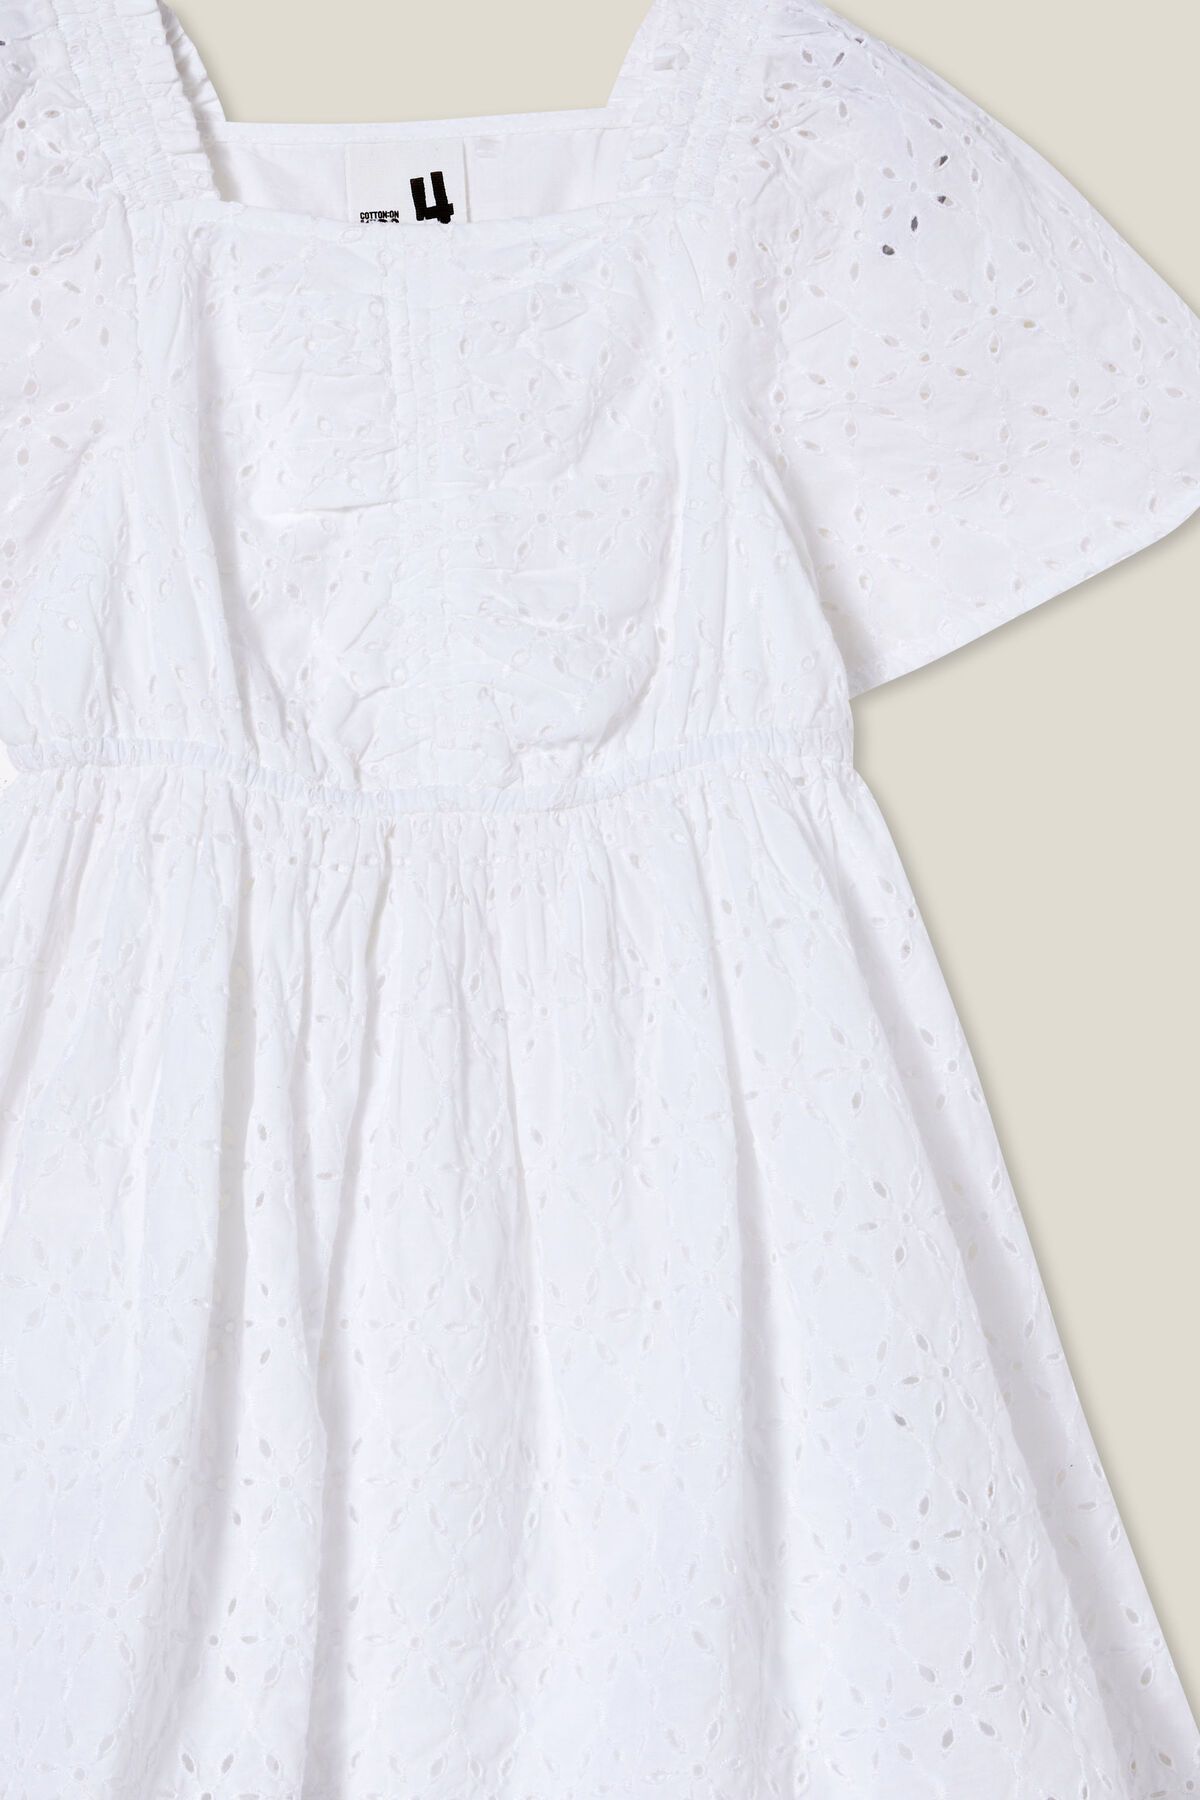 Symone Short Sleeve Dress | Cotton On (US)